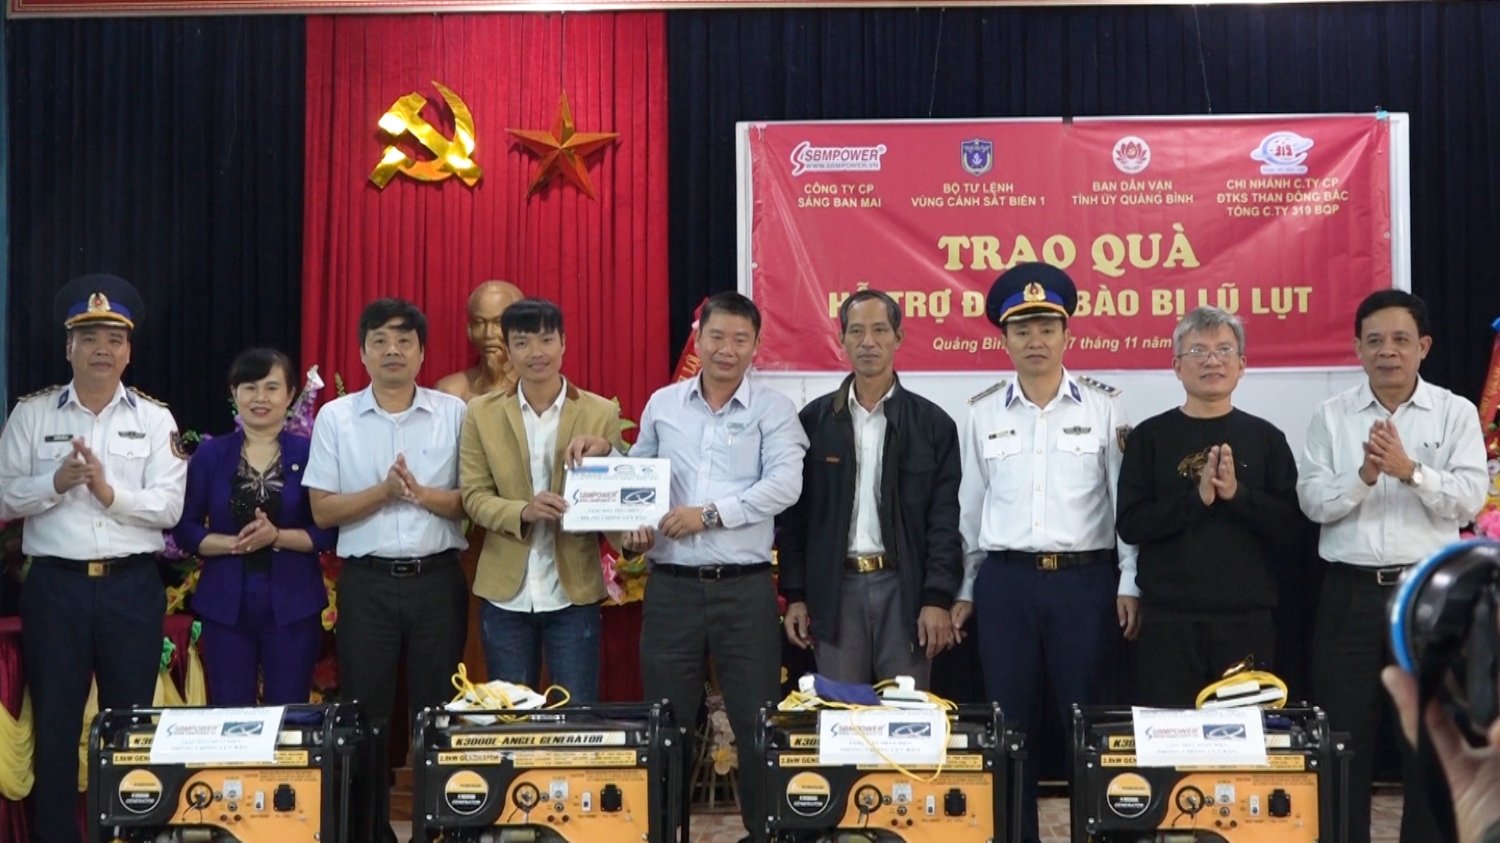 Bộ tư lệnh vùng Cảnh sát biển 1 phối hợp với Công ty CP Sáng Ban Mai, Ban Dân vận Tỉnh ủy đã đến trao 03 máy phát điện cho các trạm y tế của 3 xã Quảng Lộc, Quảng Minh, Quảng Văn